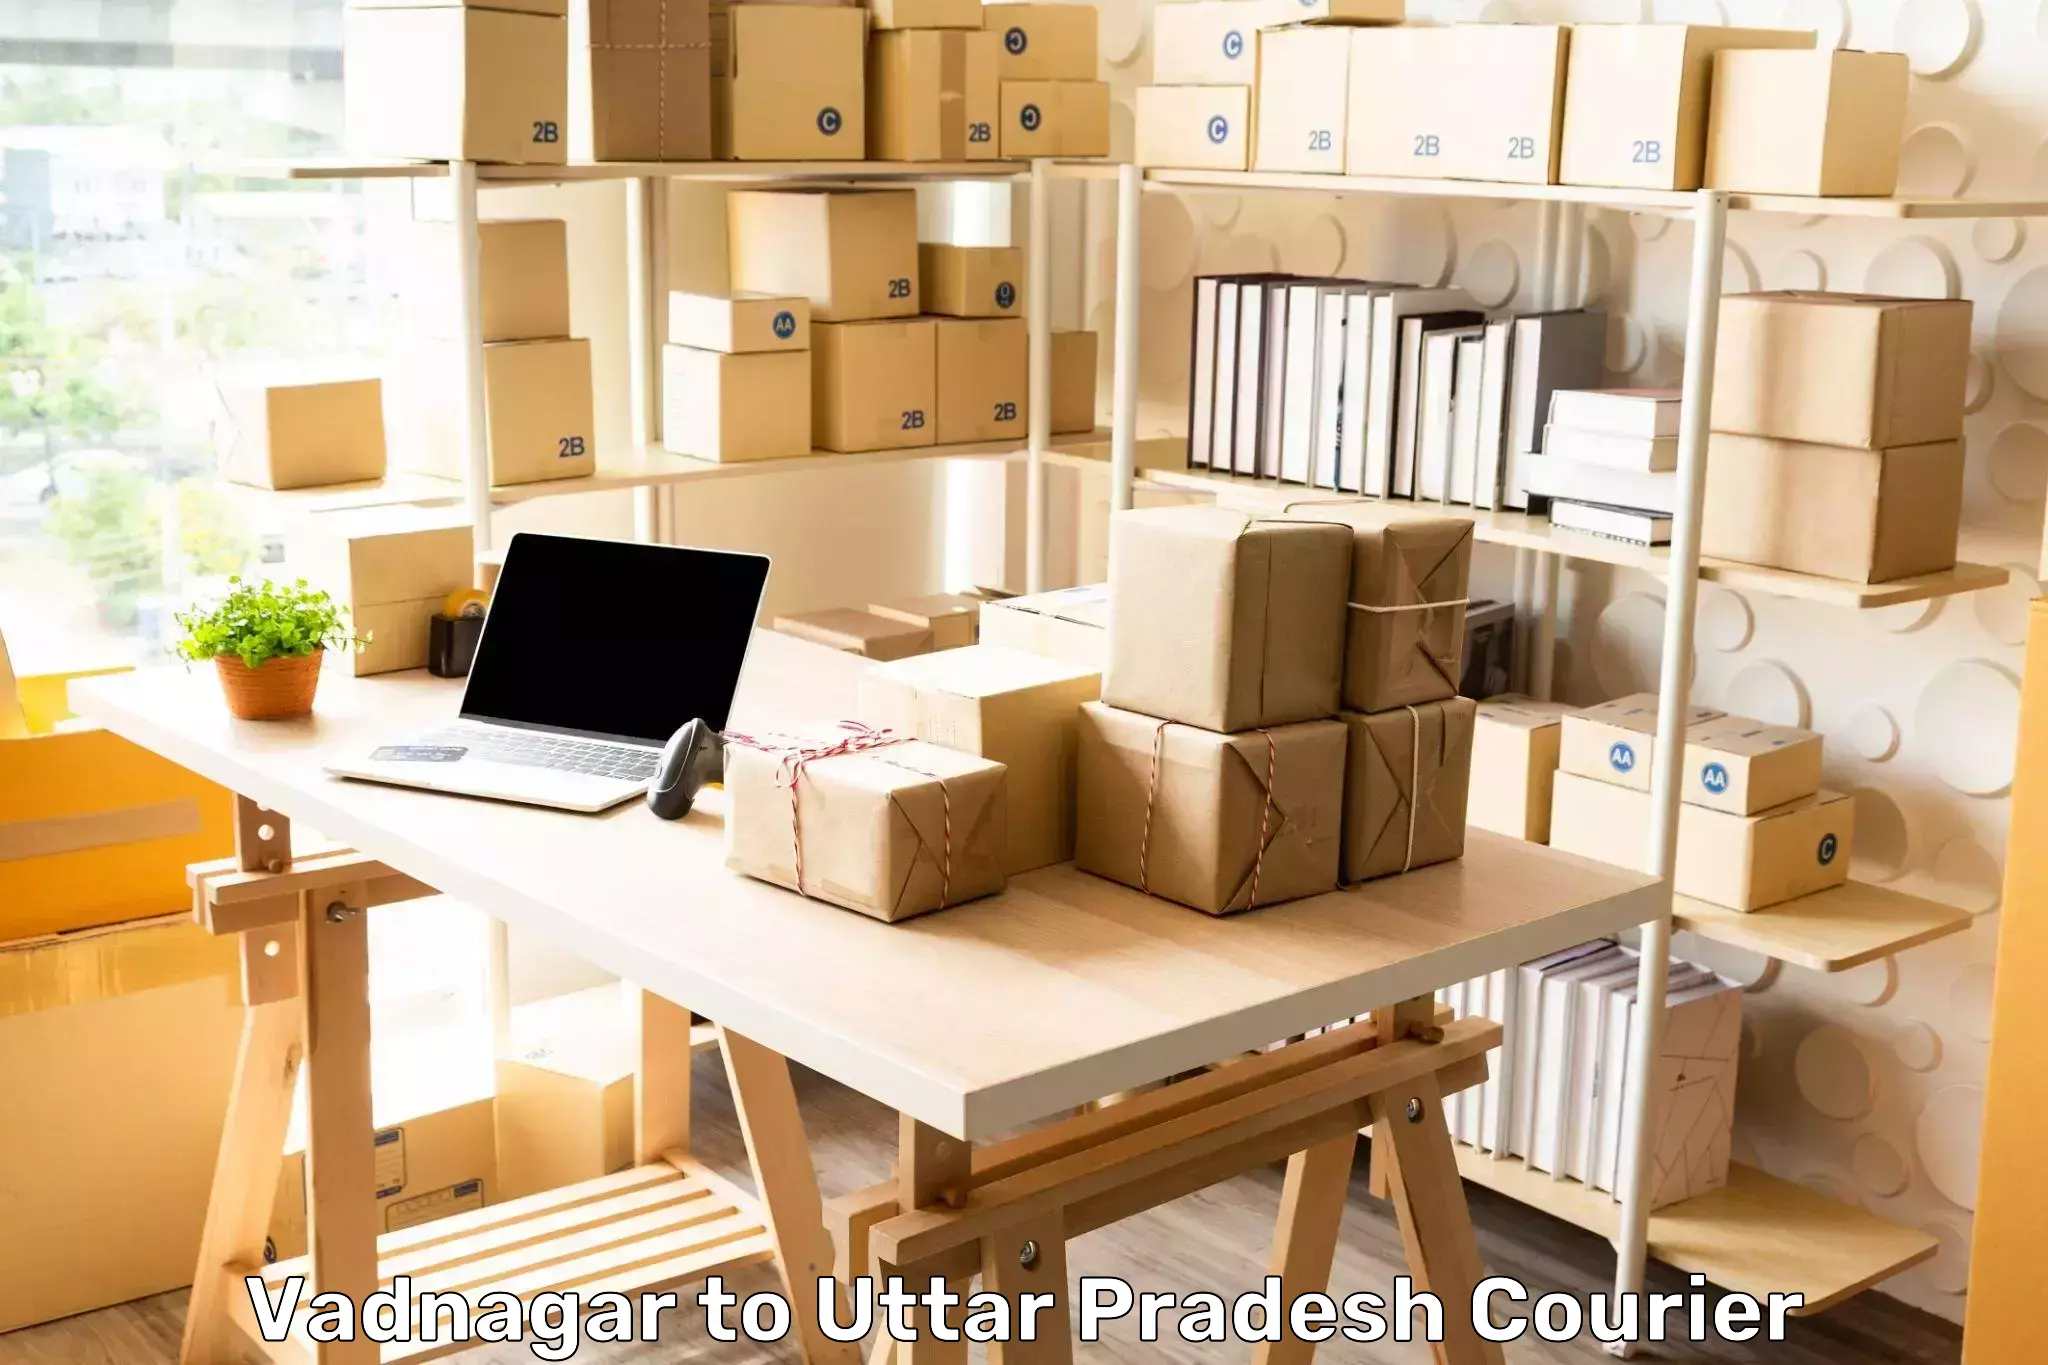 Urban courier service Vadnagar to Uttar Pradesh